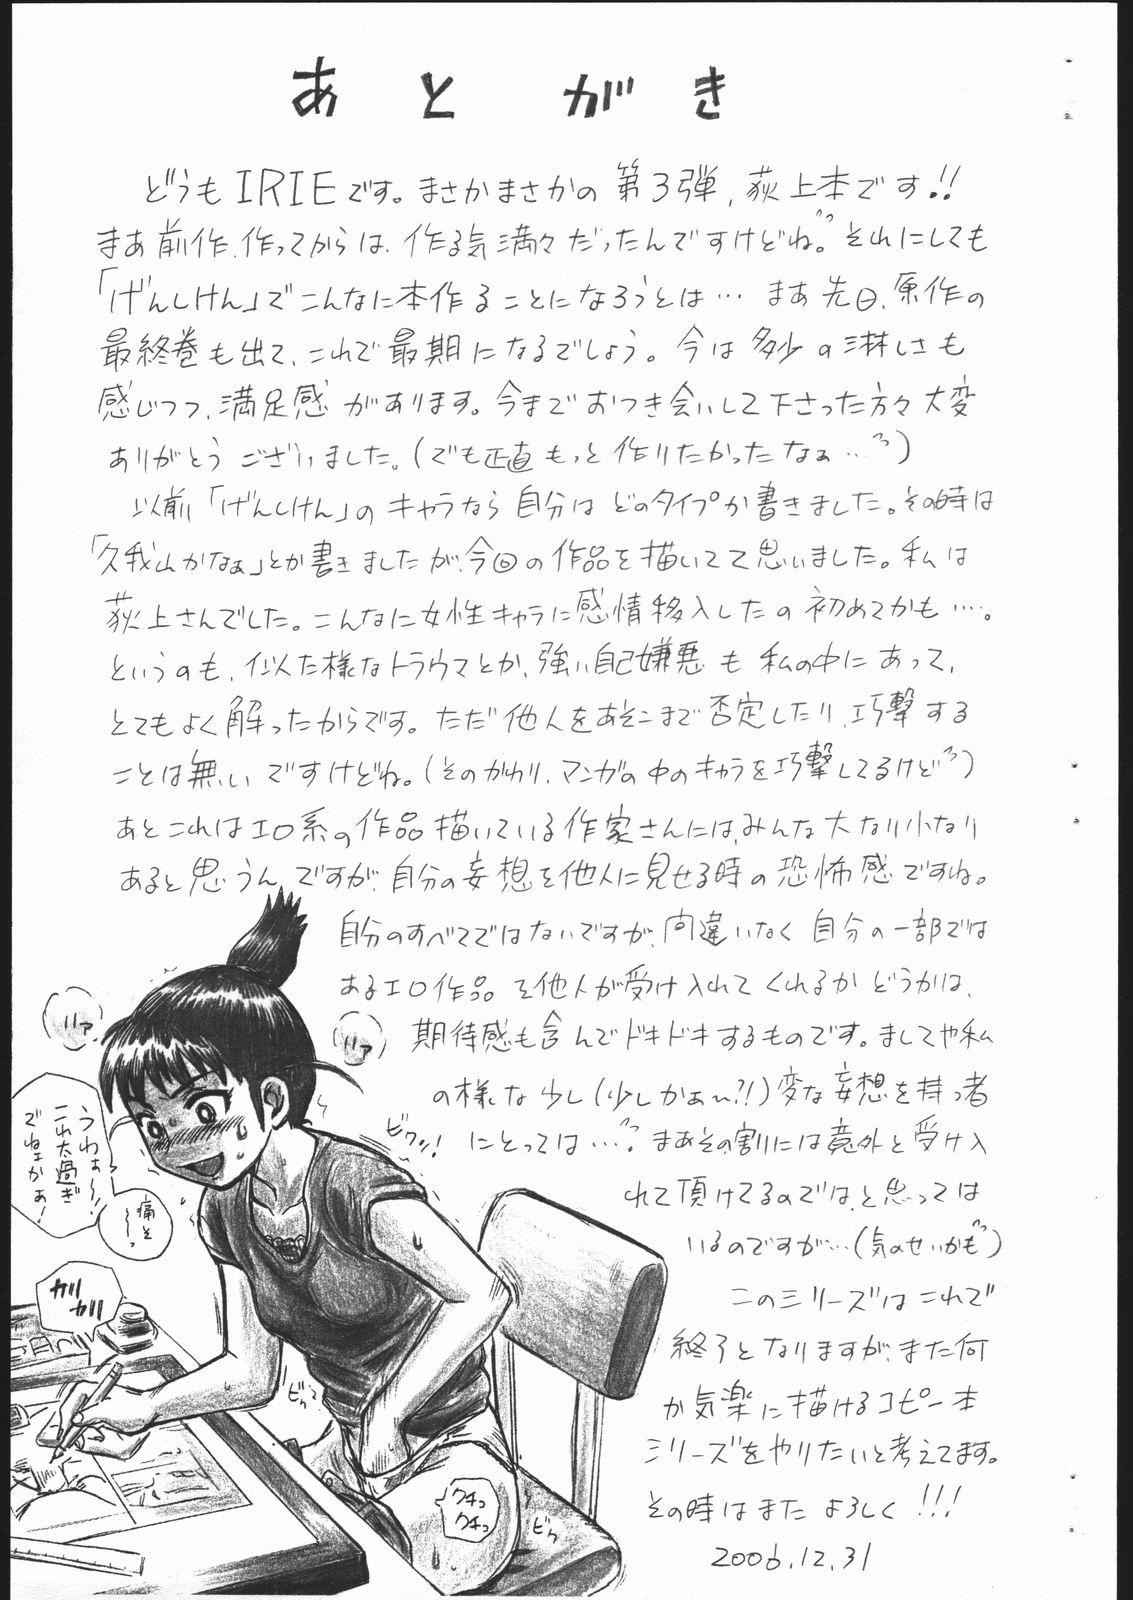 Deepthroat GENSHIKEN FILE Ogiue Chika Gazou Shuu - Genshiken Deep Throat - Page 9